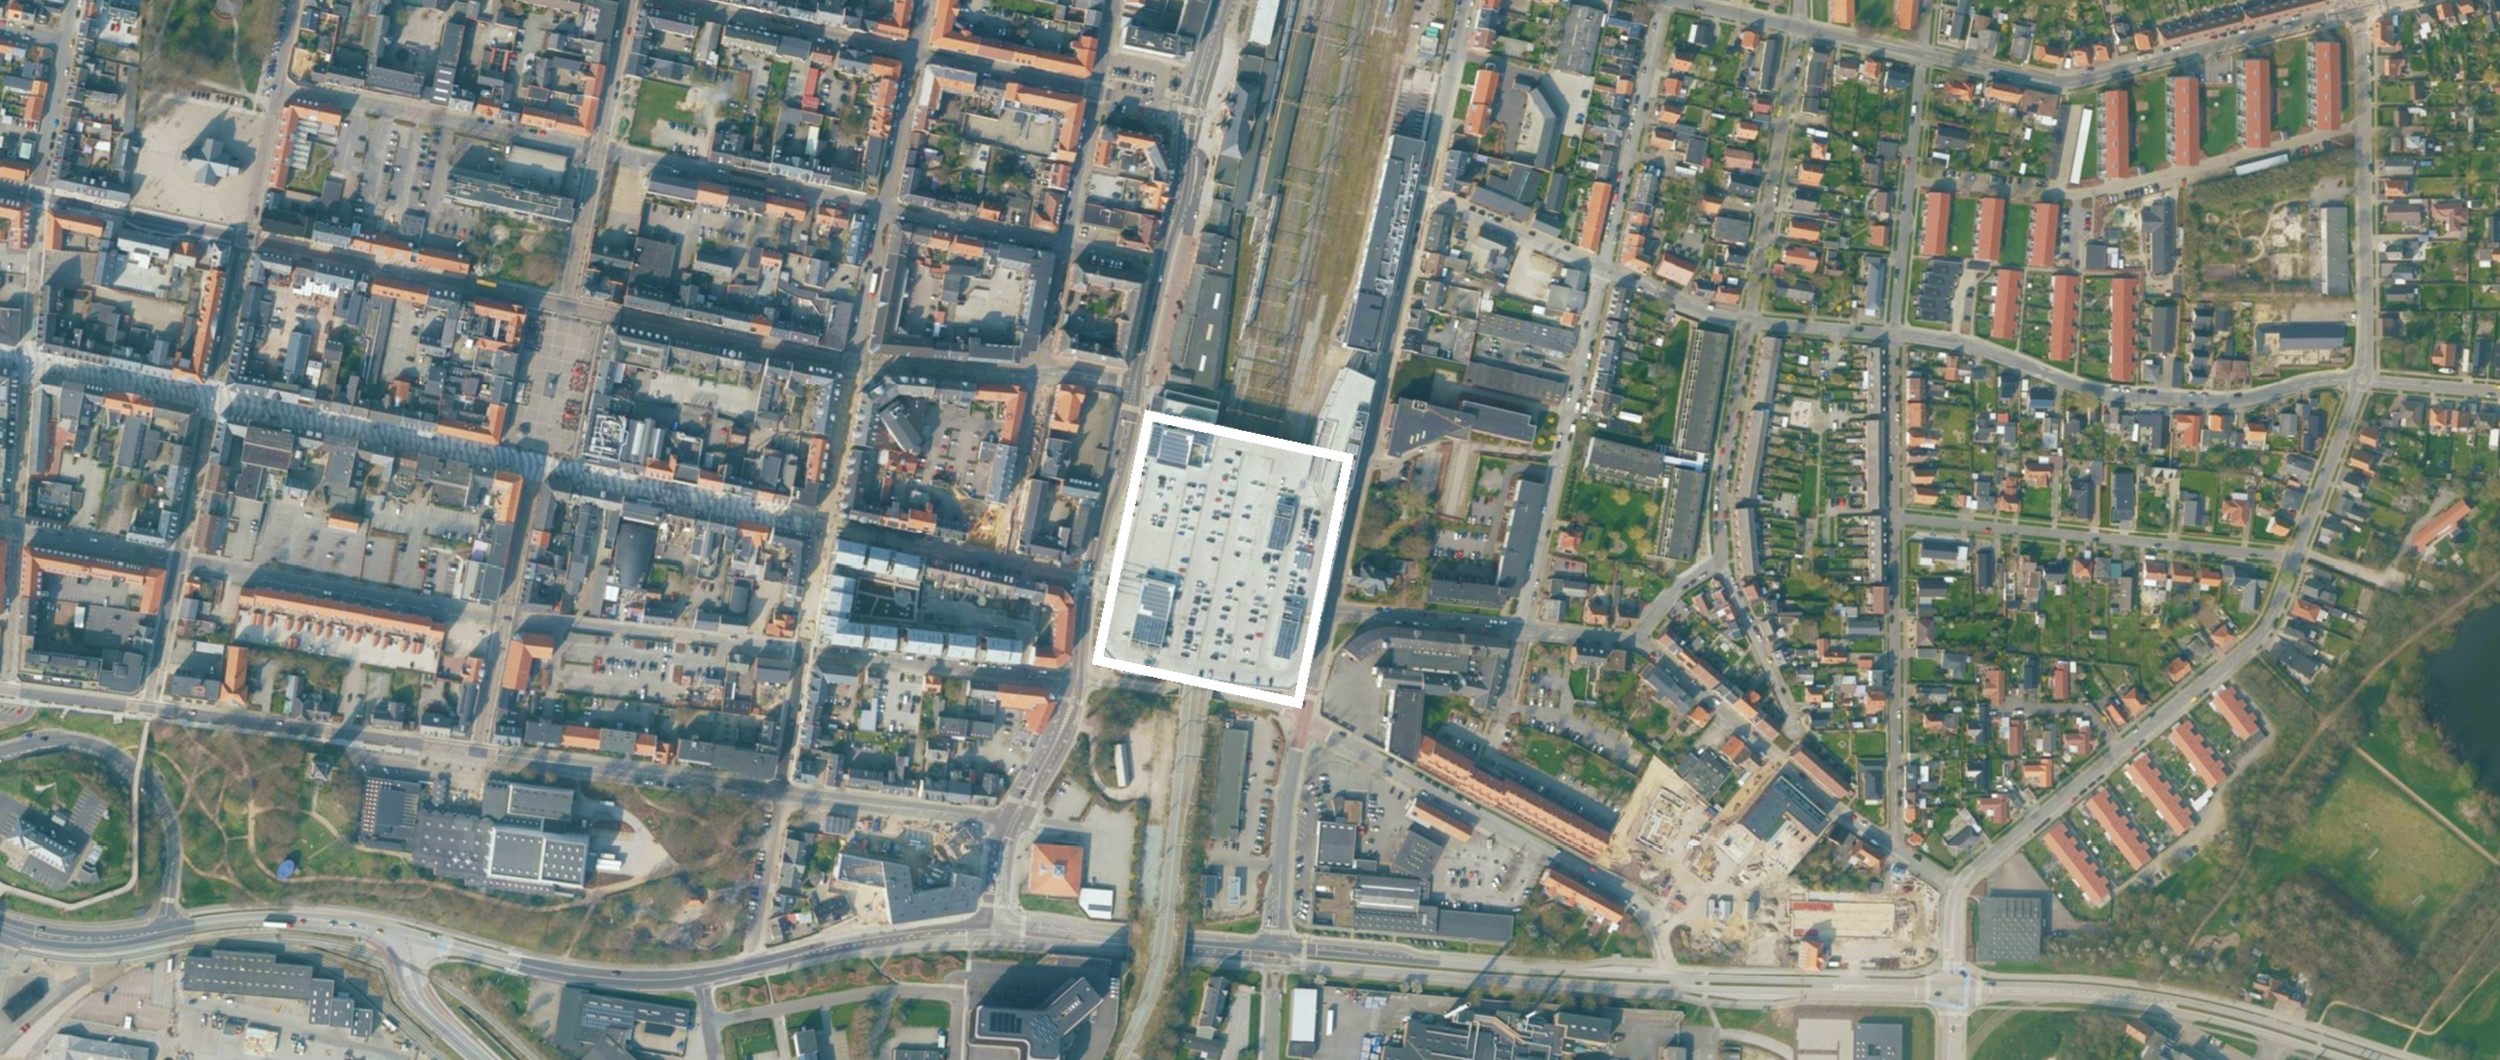 Centralt beliggende i Esbjerg finder man Broen shoppingcenter, der strækker sig over jernbanen og forbinder byens centrum med byens østside.